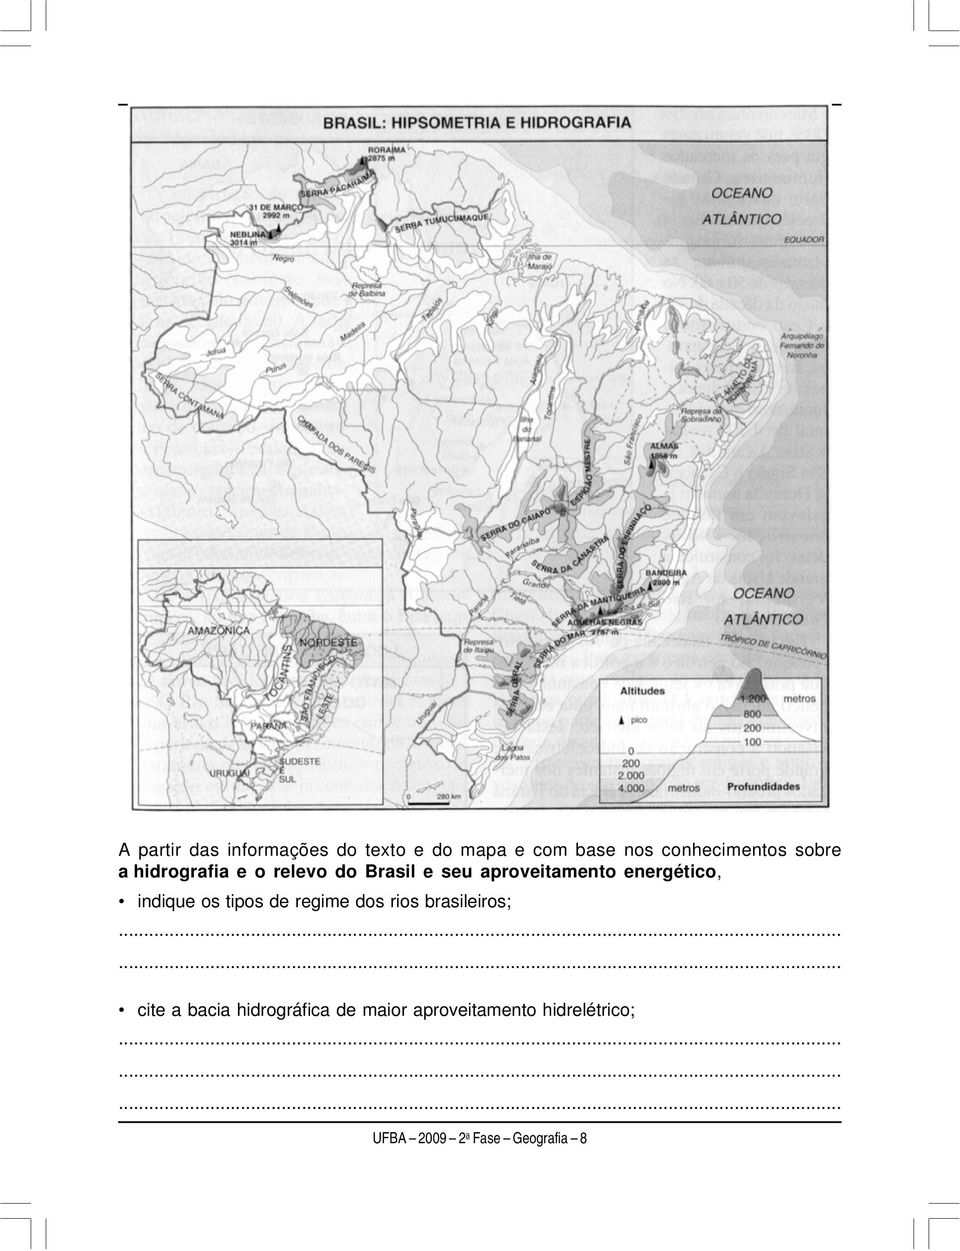 energético, indique os tipos de regime dos rios brasileiros; cite a